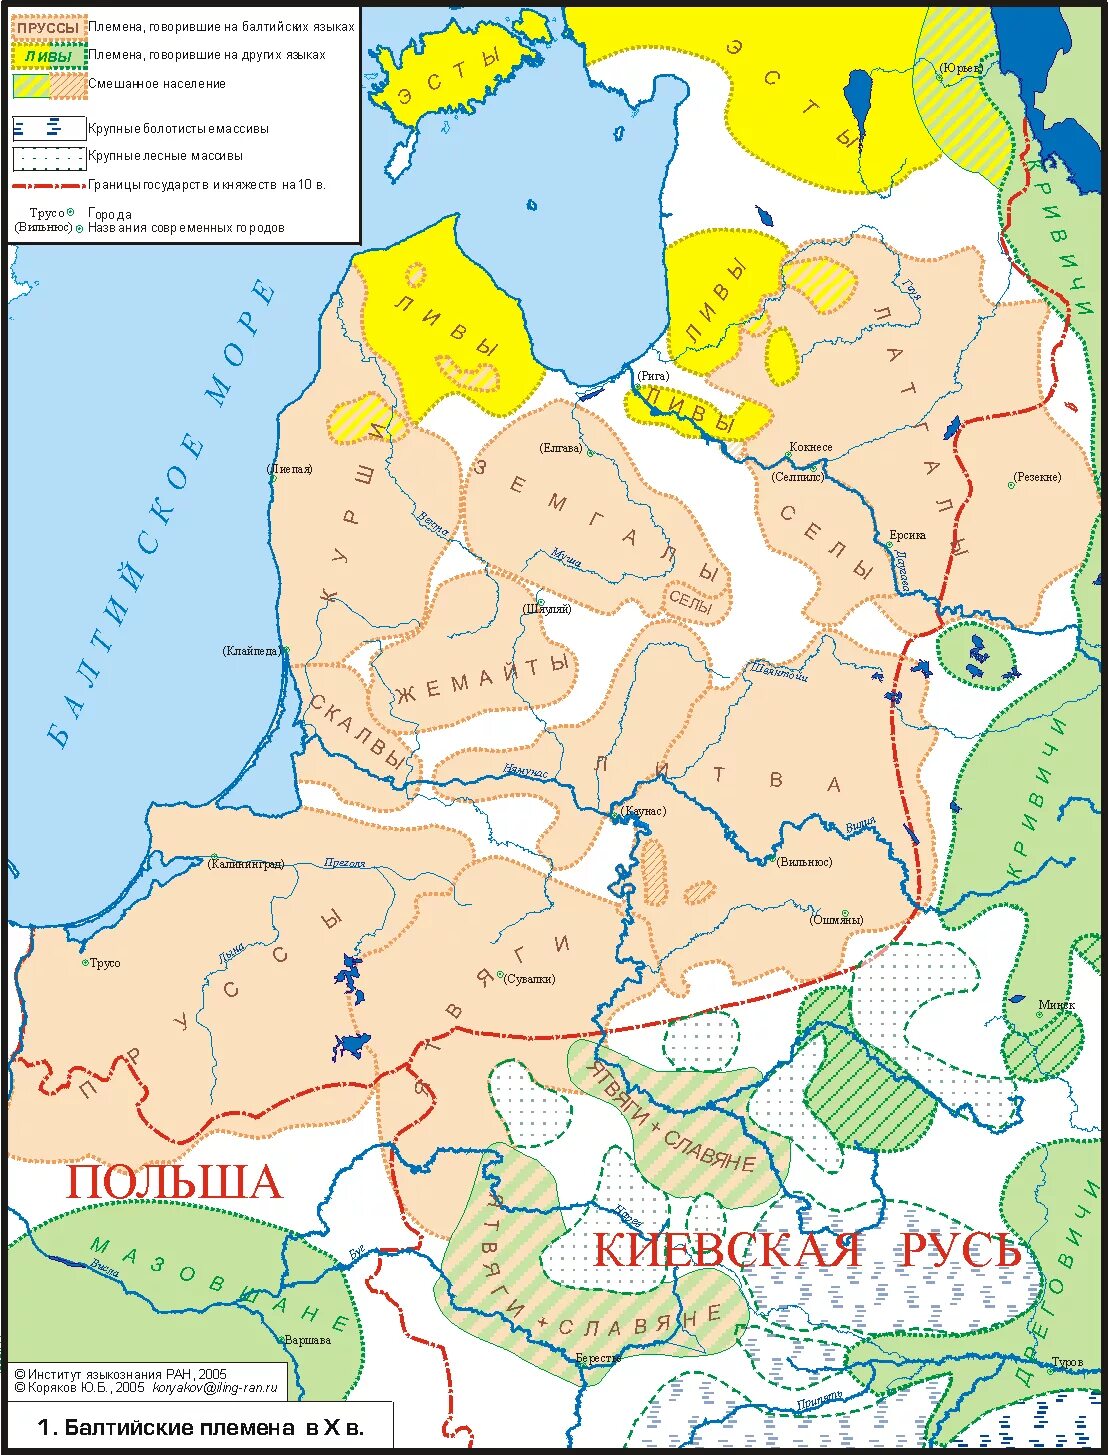 Какие народы жили в прибалтийских землях. Ятвяги Пруссы. Литовские племена в 13 веке. Прибалтика в 10 веке. Карта прусских племен 13 век.